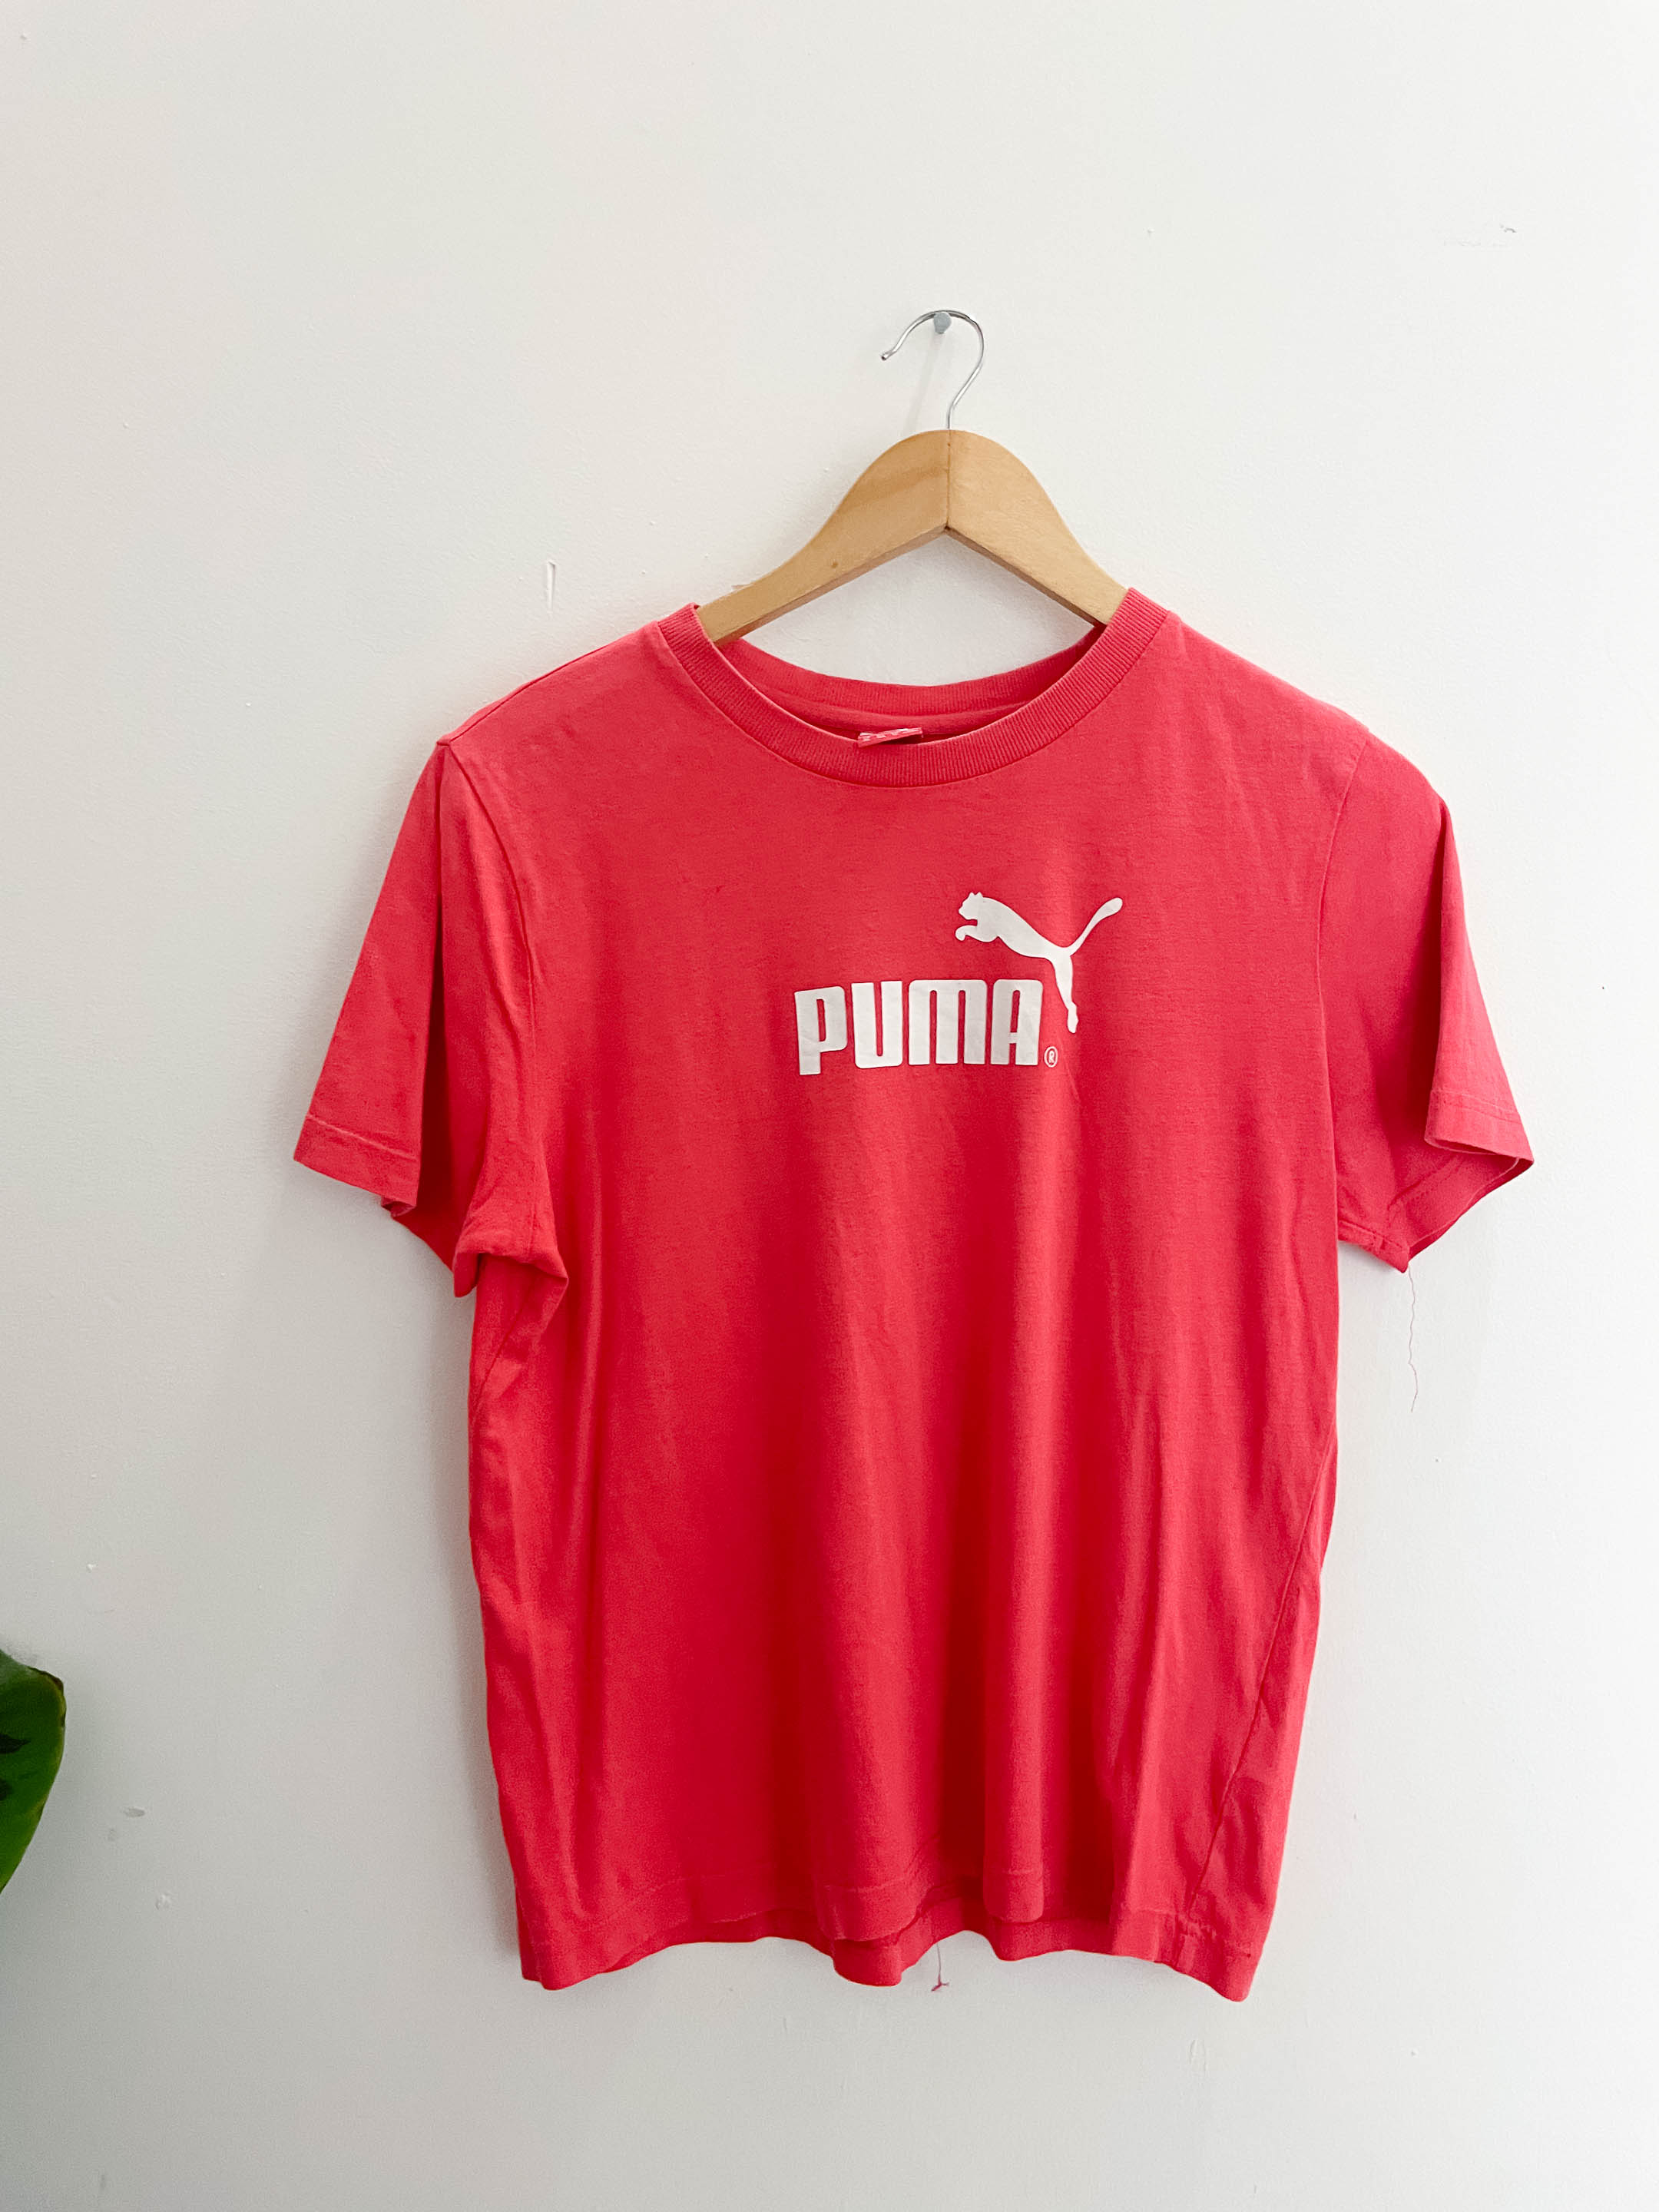 Vintage red puma tshirt size XL